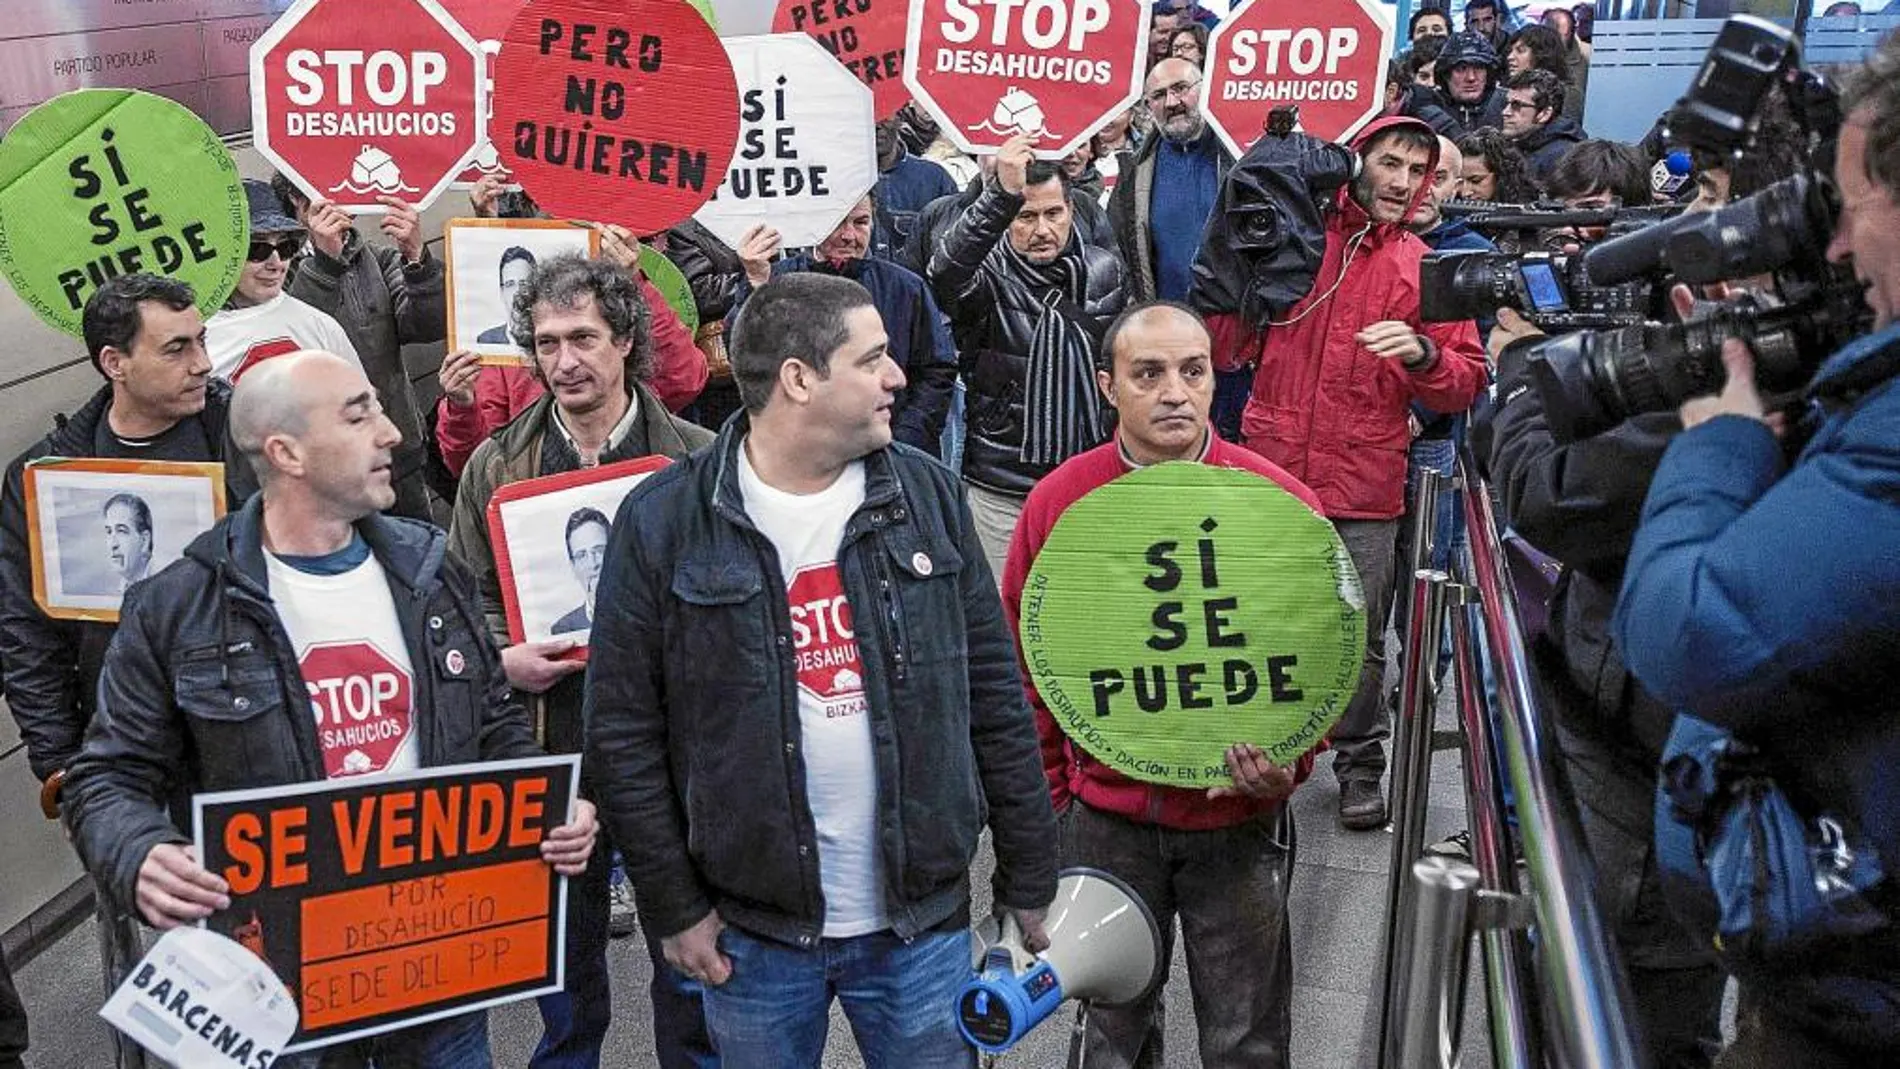 Bilbao: La plataforma antidesahucios frente a la sede del PP en la ciudad vasca